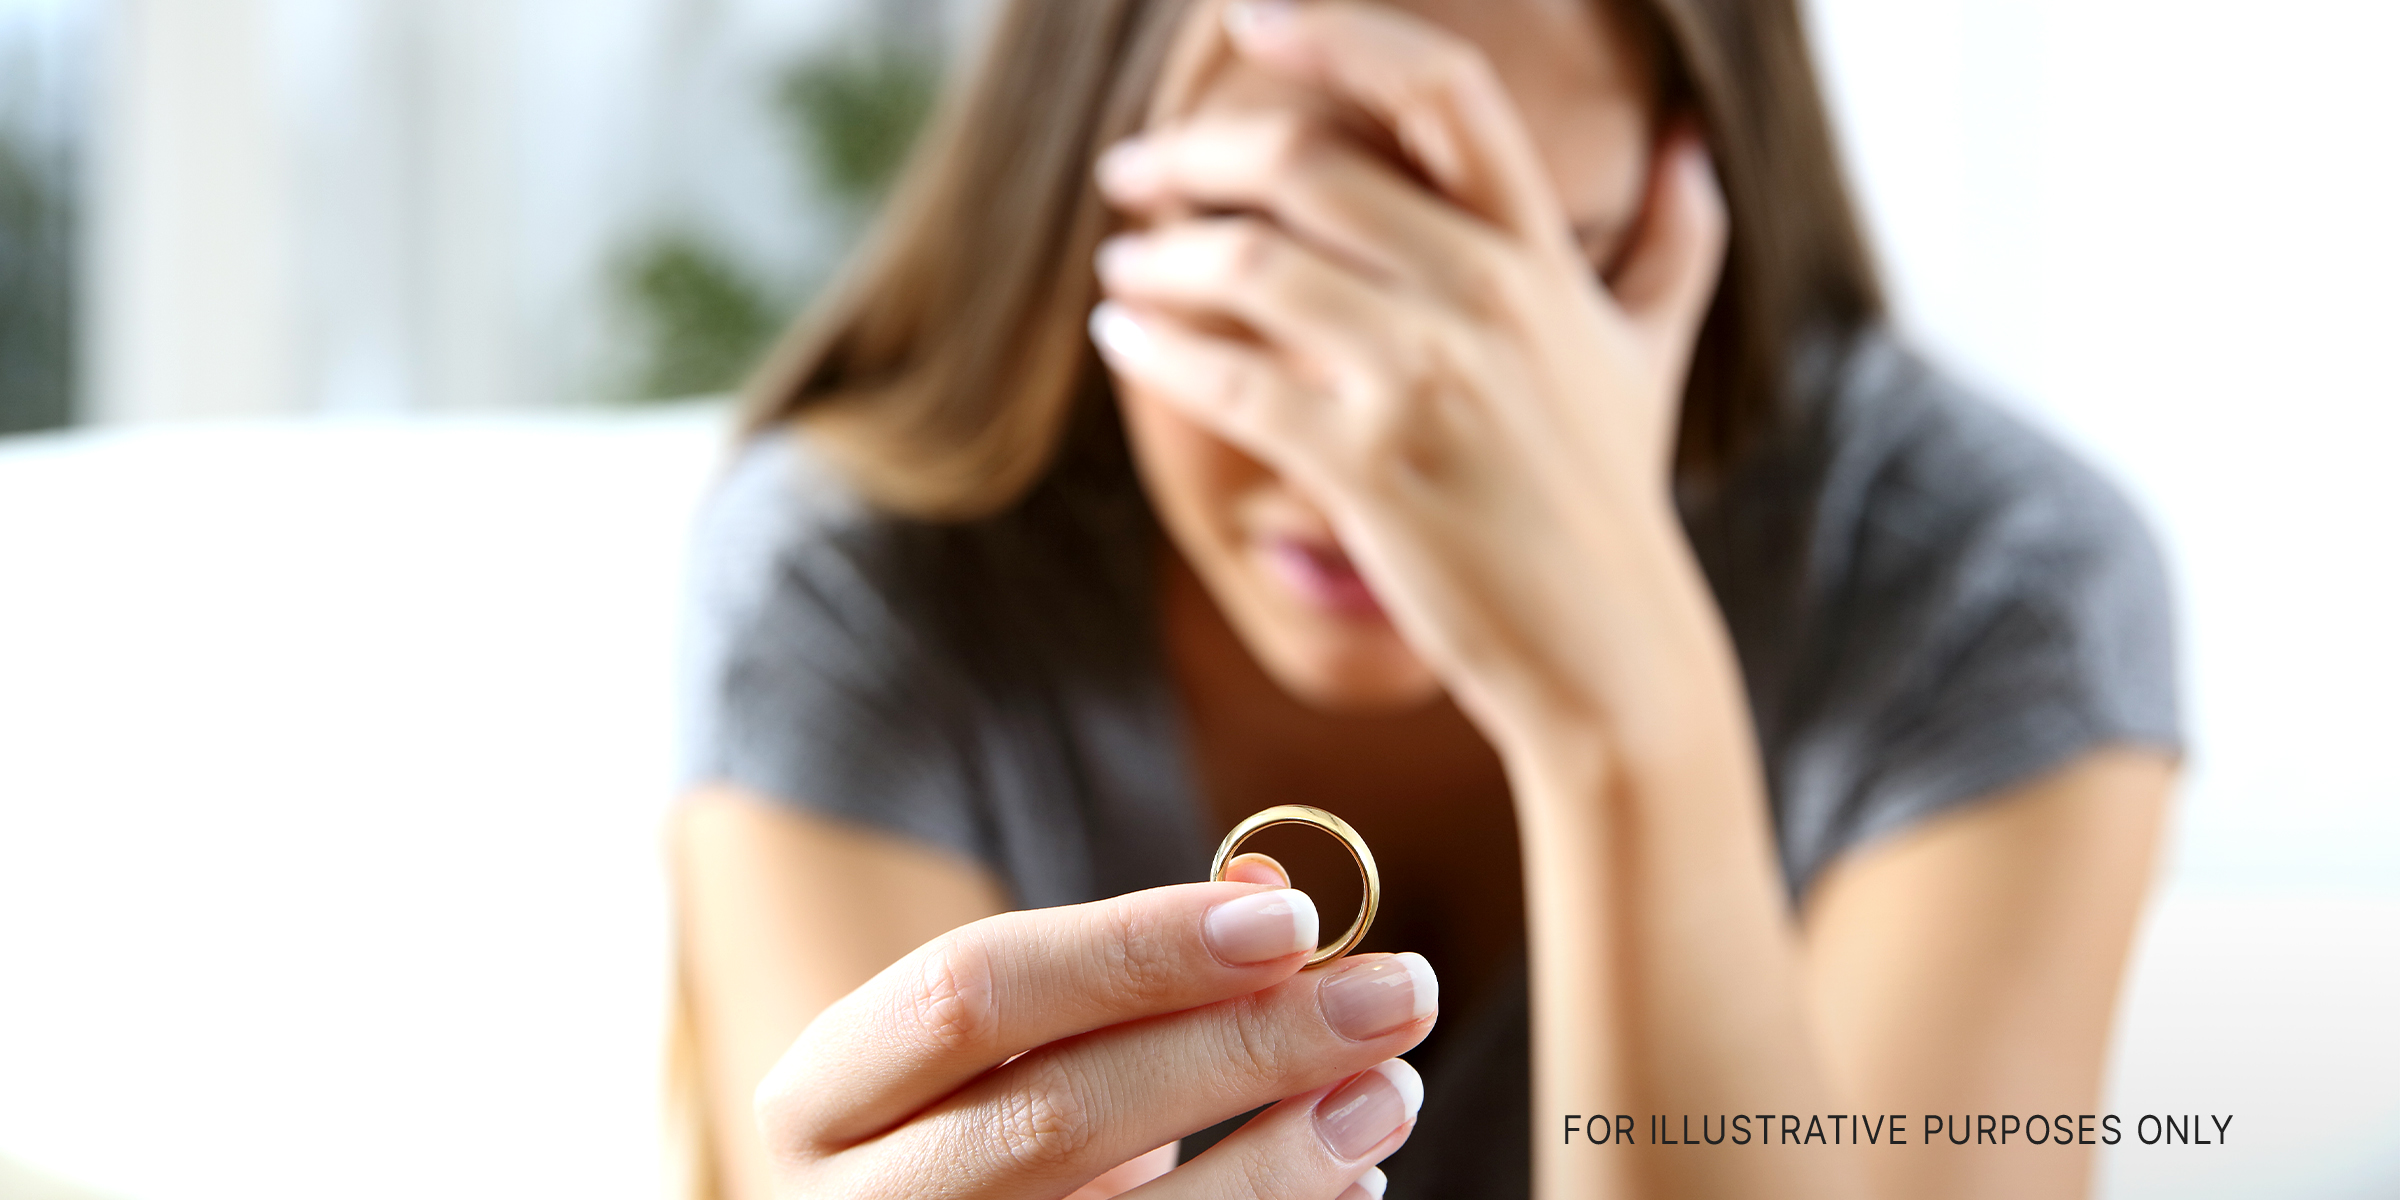 An upset woman holding an engagement ring | Source: Shutterstock